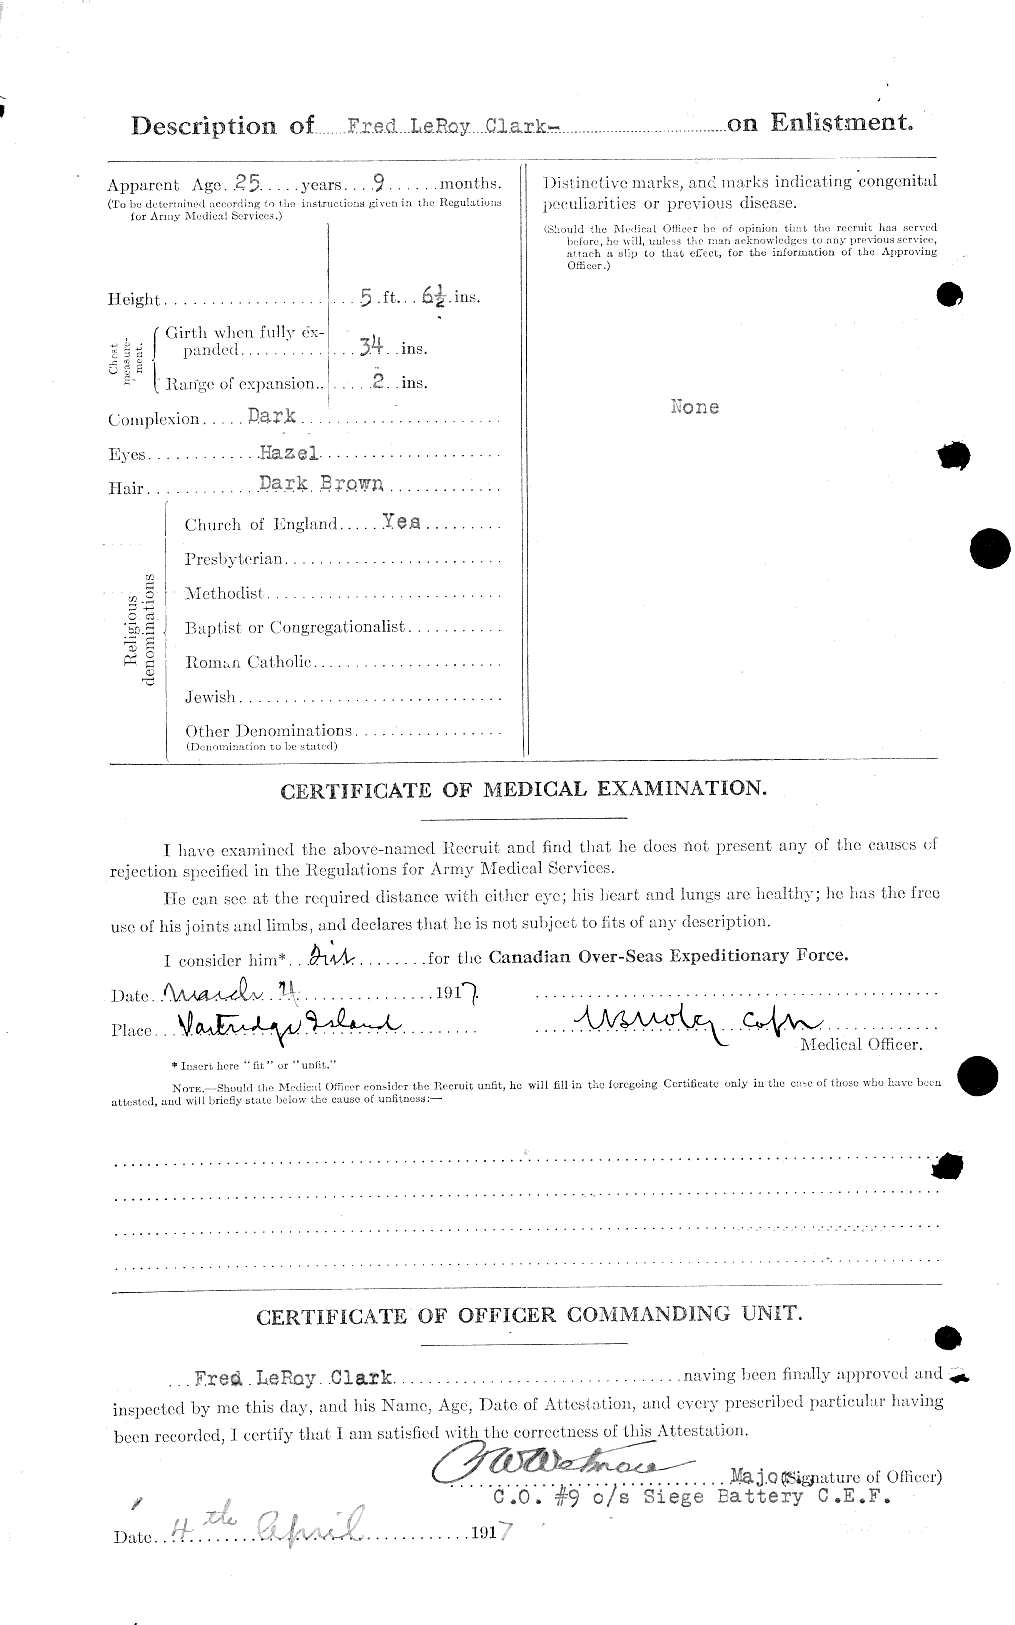 Dossiers du Personnel de la Première Guerre mondiale - CEC 020980b